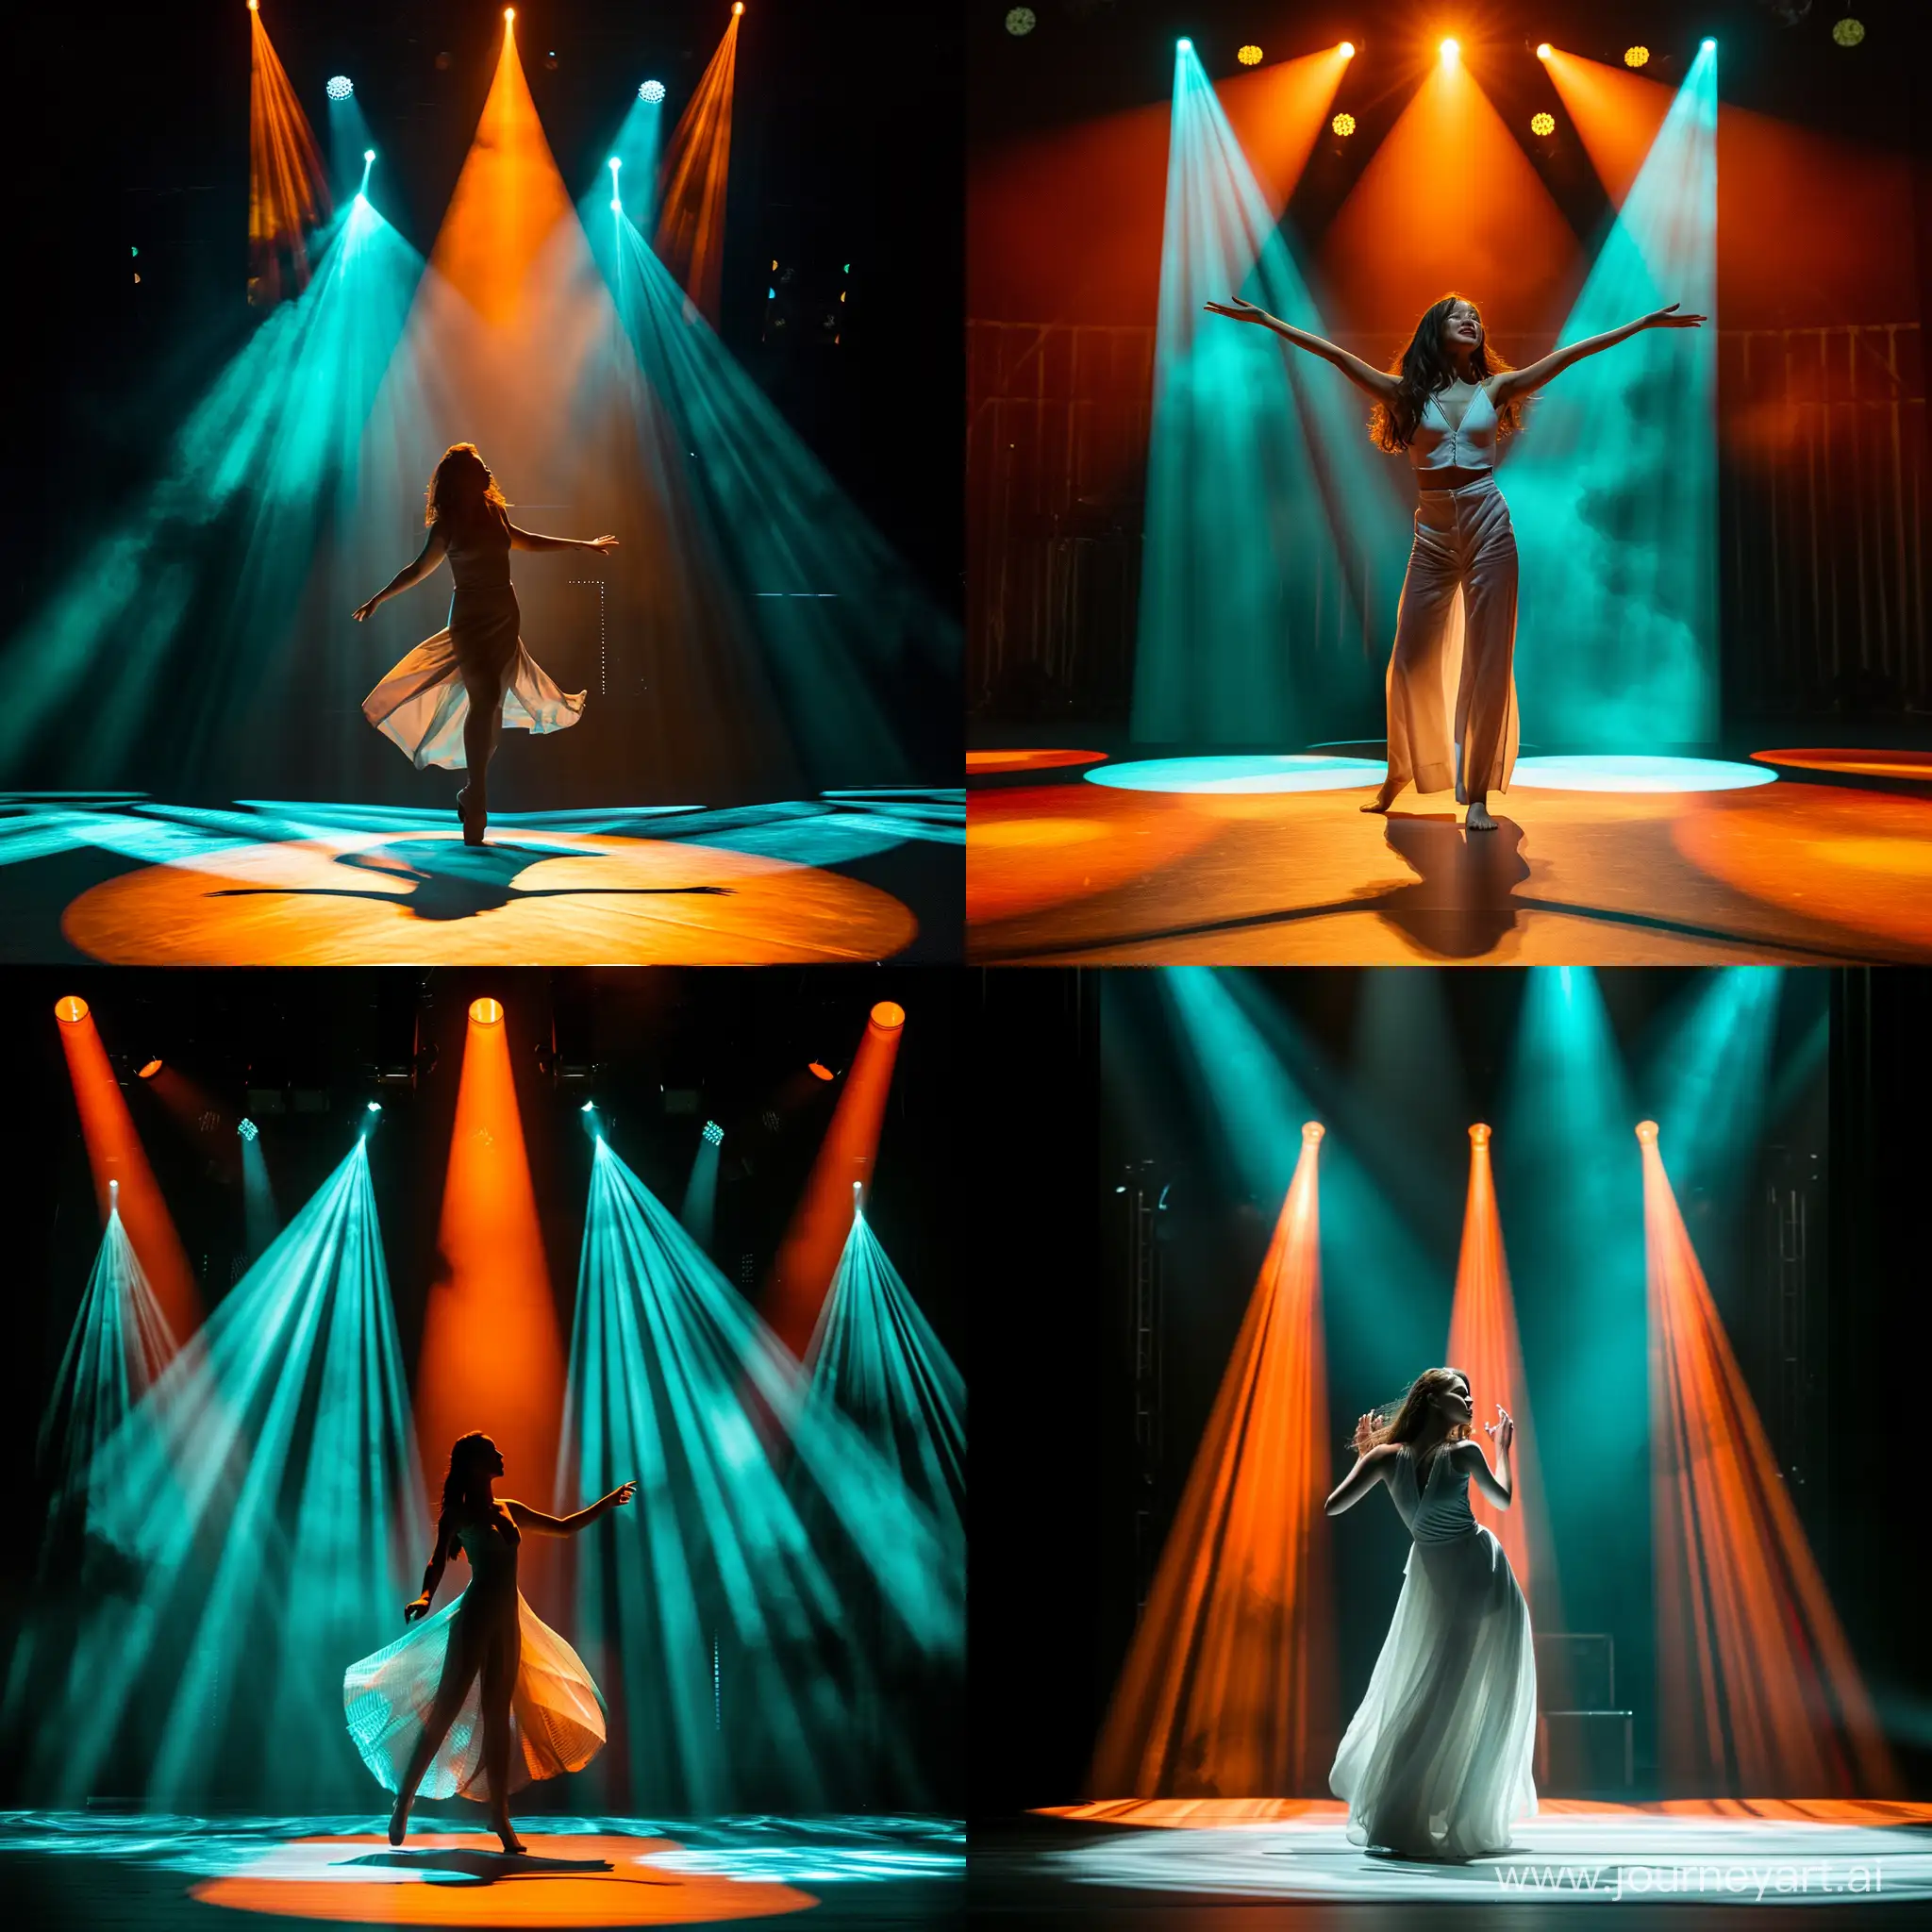 актриса танцует на сцене на неё светит софит оранжевый и бирюзовый